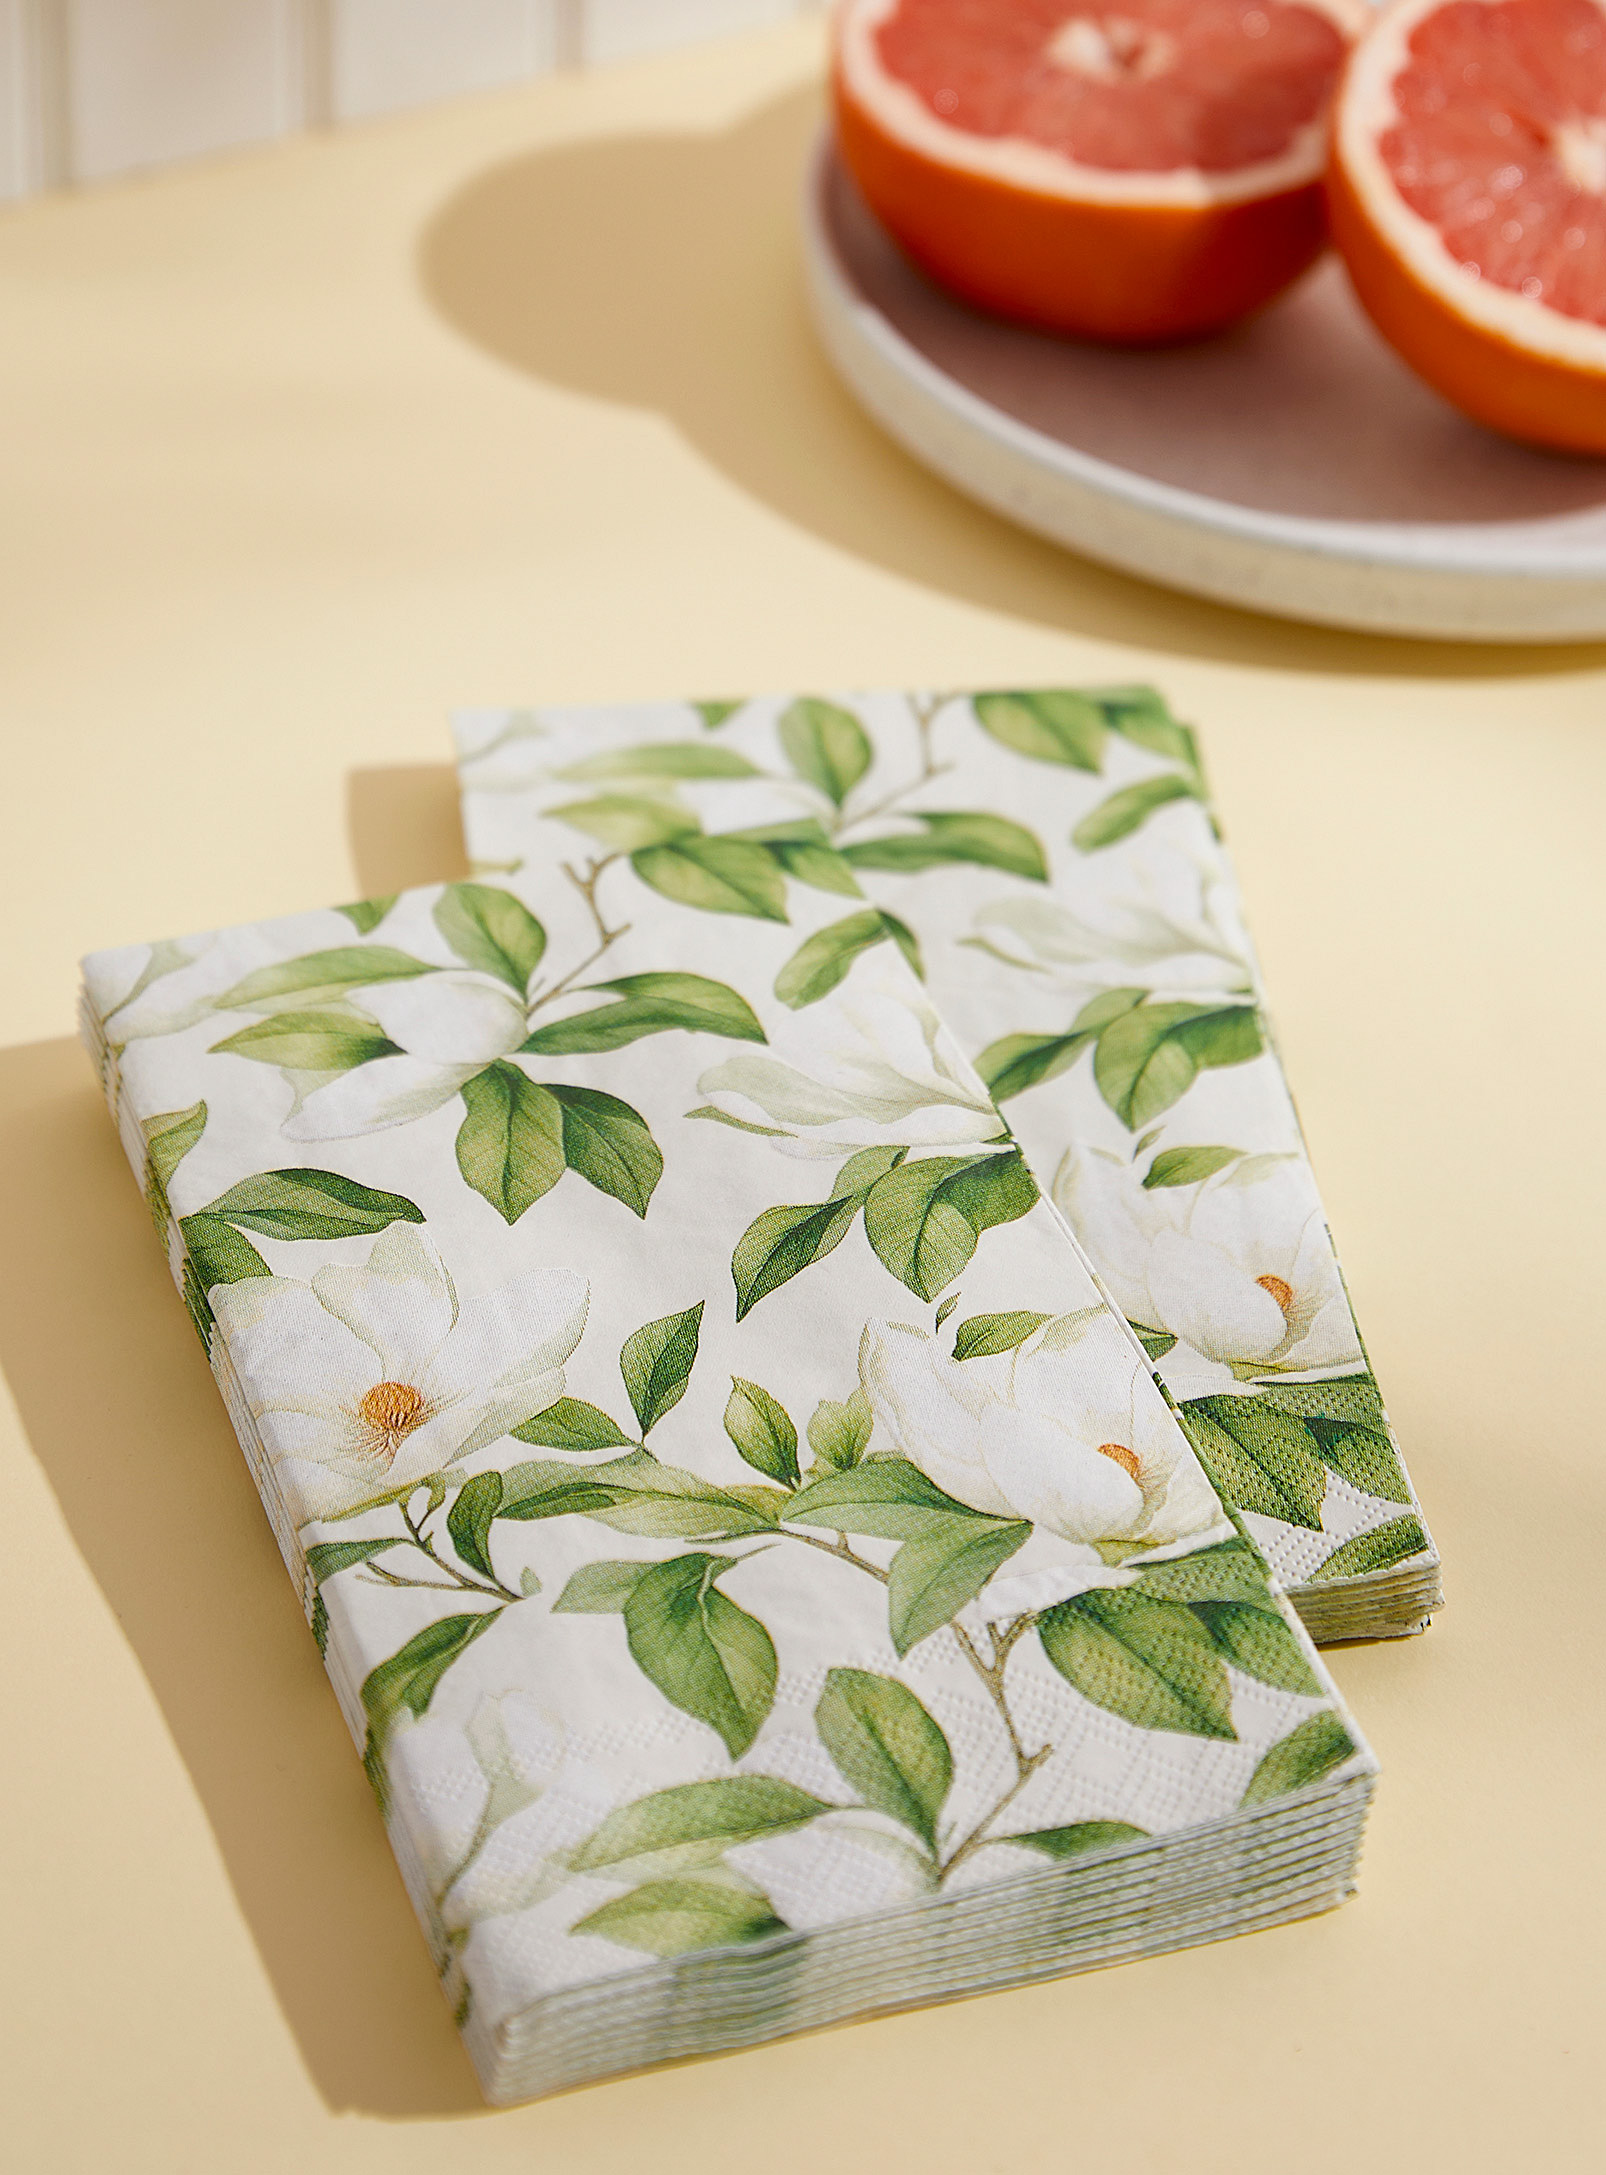 Simons Maison - White flowers paper napkins 11 x 20 cm. Pack of 16.